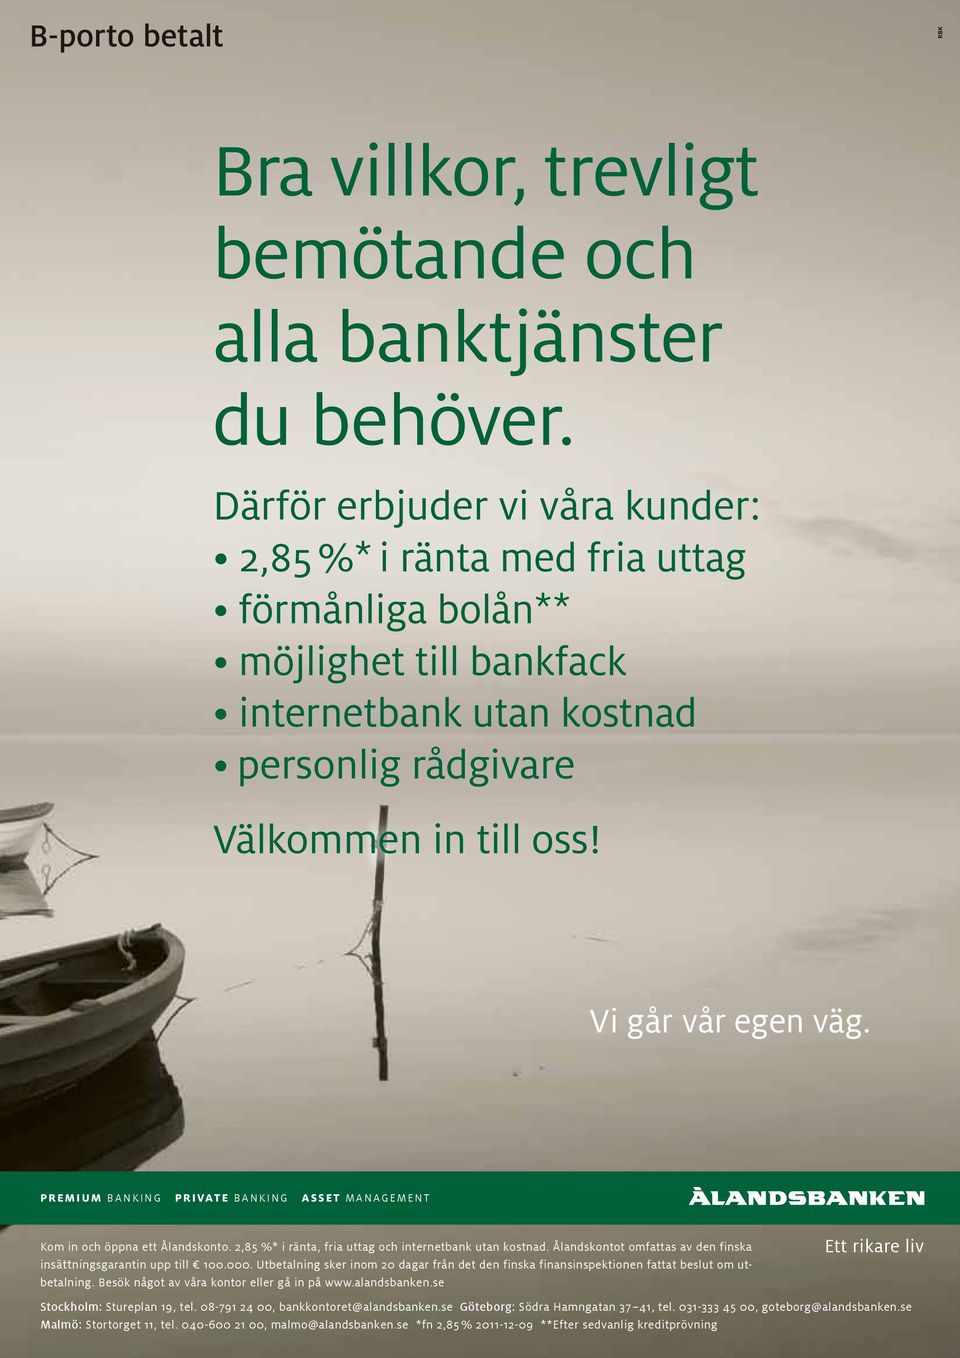 PREMIUM BANKING PRIVATE BANKING ASSET MANAGEMENT Kom in och öppna ett Ålandskonto. 2,85 %* i ränta, fria uttag och internetbank utan kostnad.